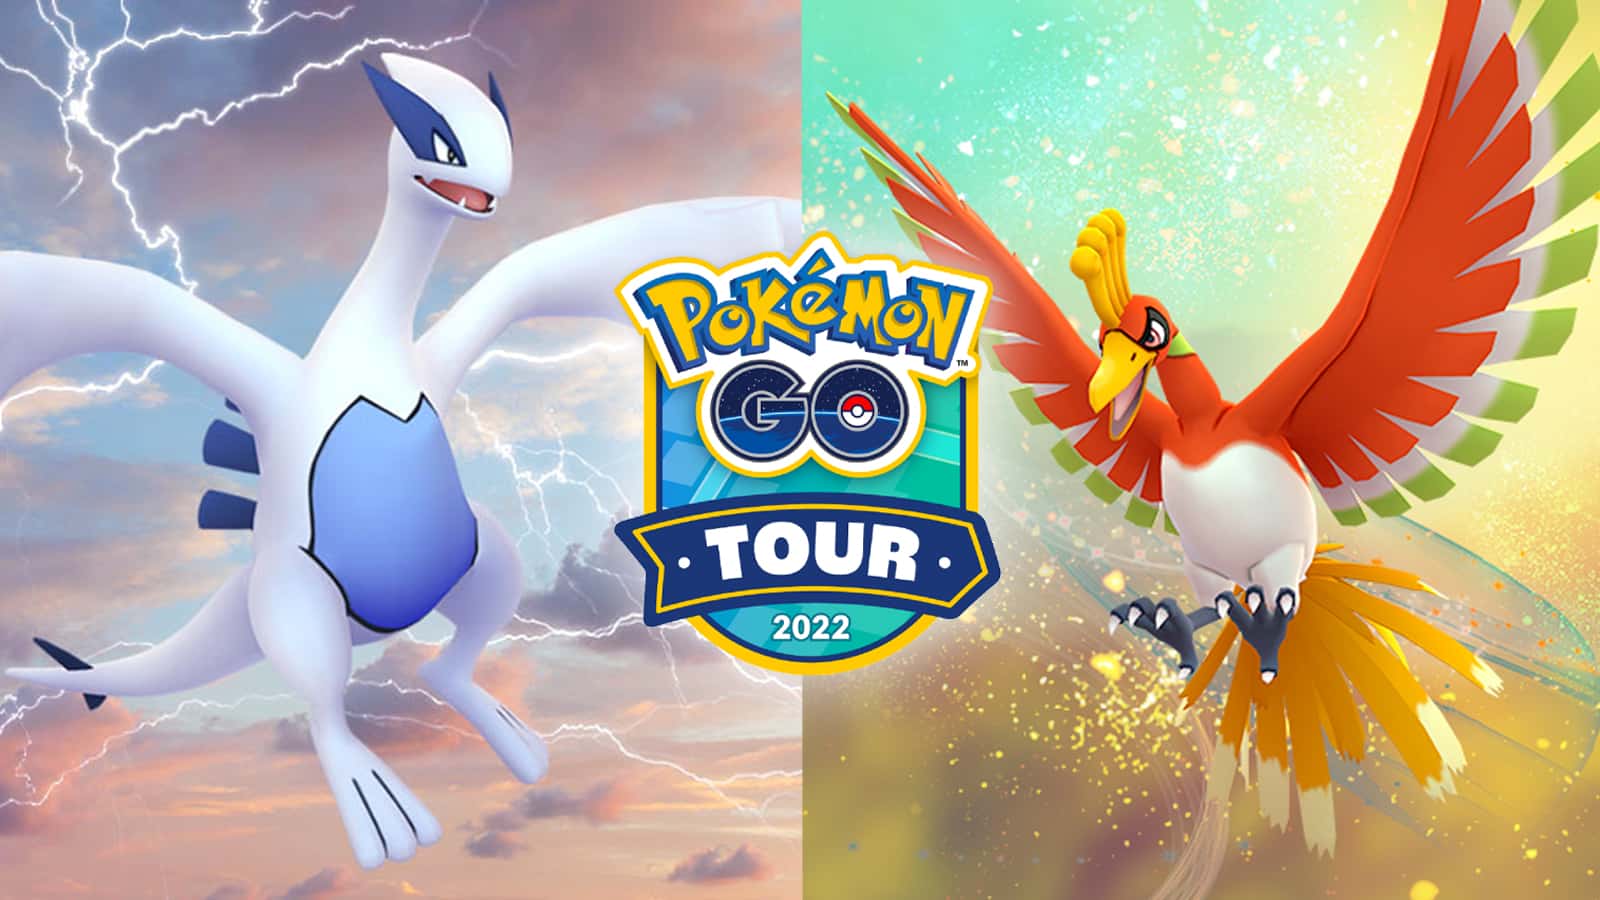 Tudo que você precisa saber sobre a Pokémon GO Tour 2022: Johto